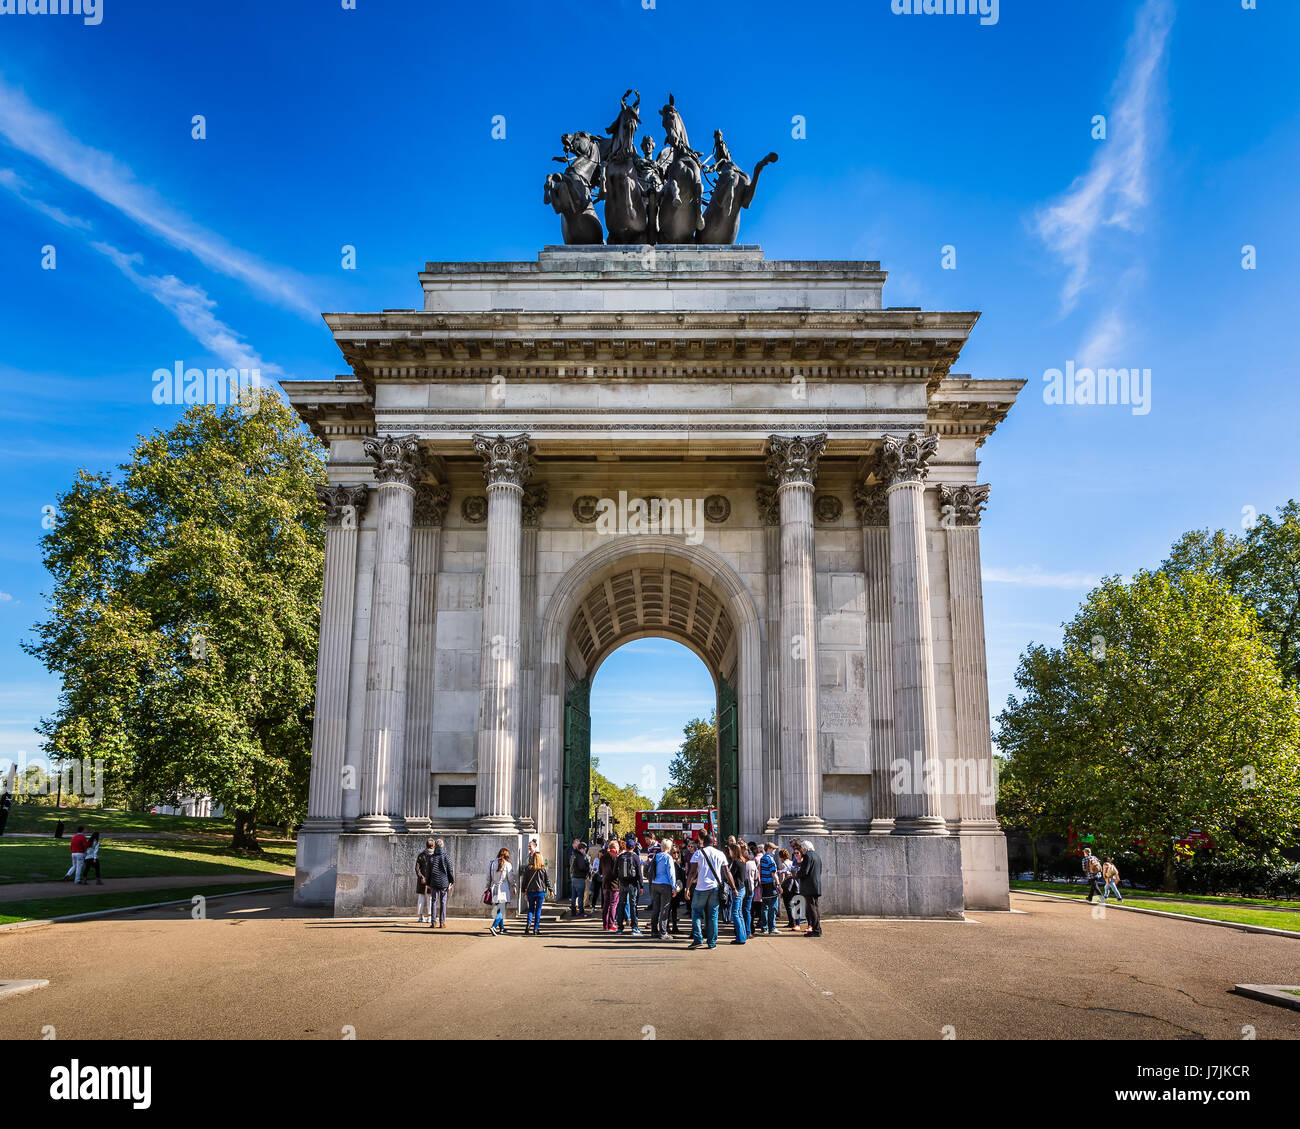 LONDON - 5. Oktober 2014: Wellington Arch am 5. Oktober 2014 in London. Auch bekannt als Verfassung Bogen oder den Green Park Bogen, konzipiert als ein Denkmal Stockfoto